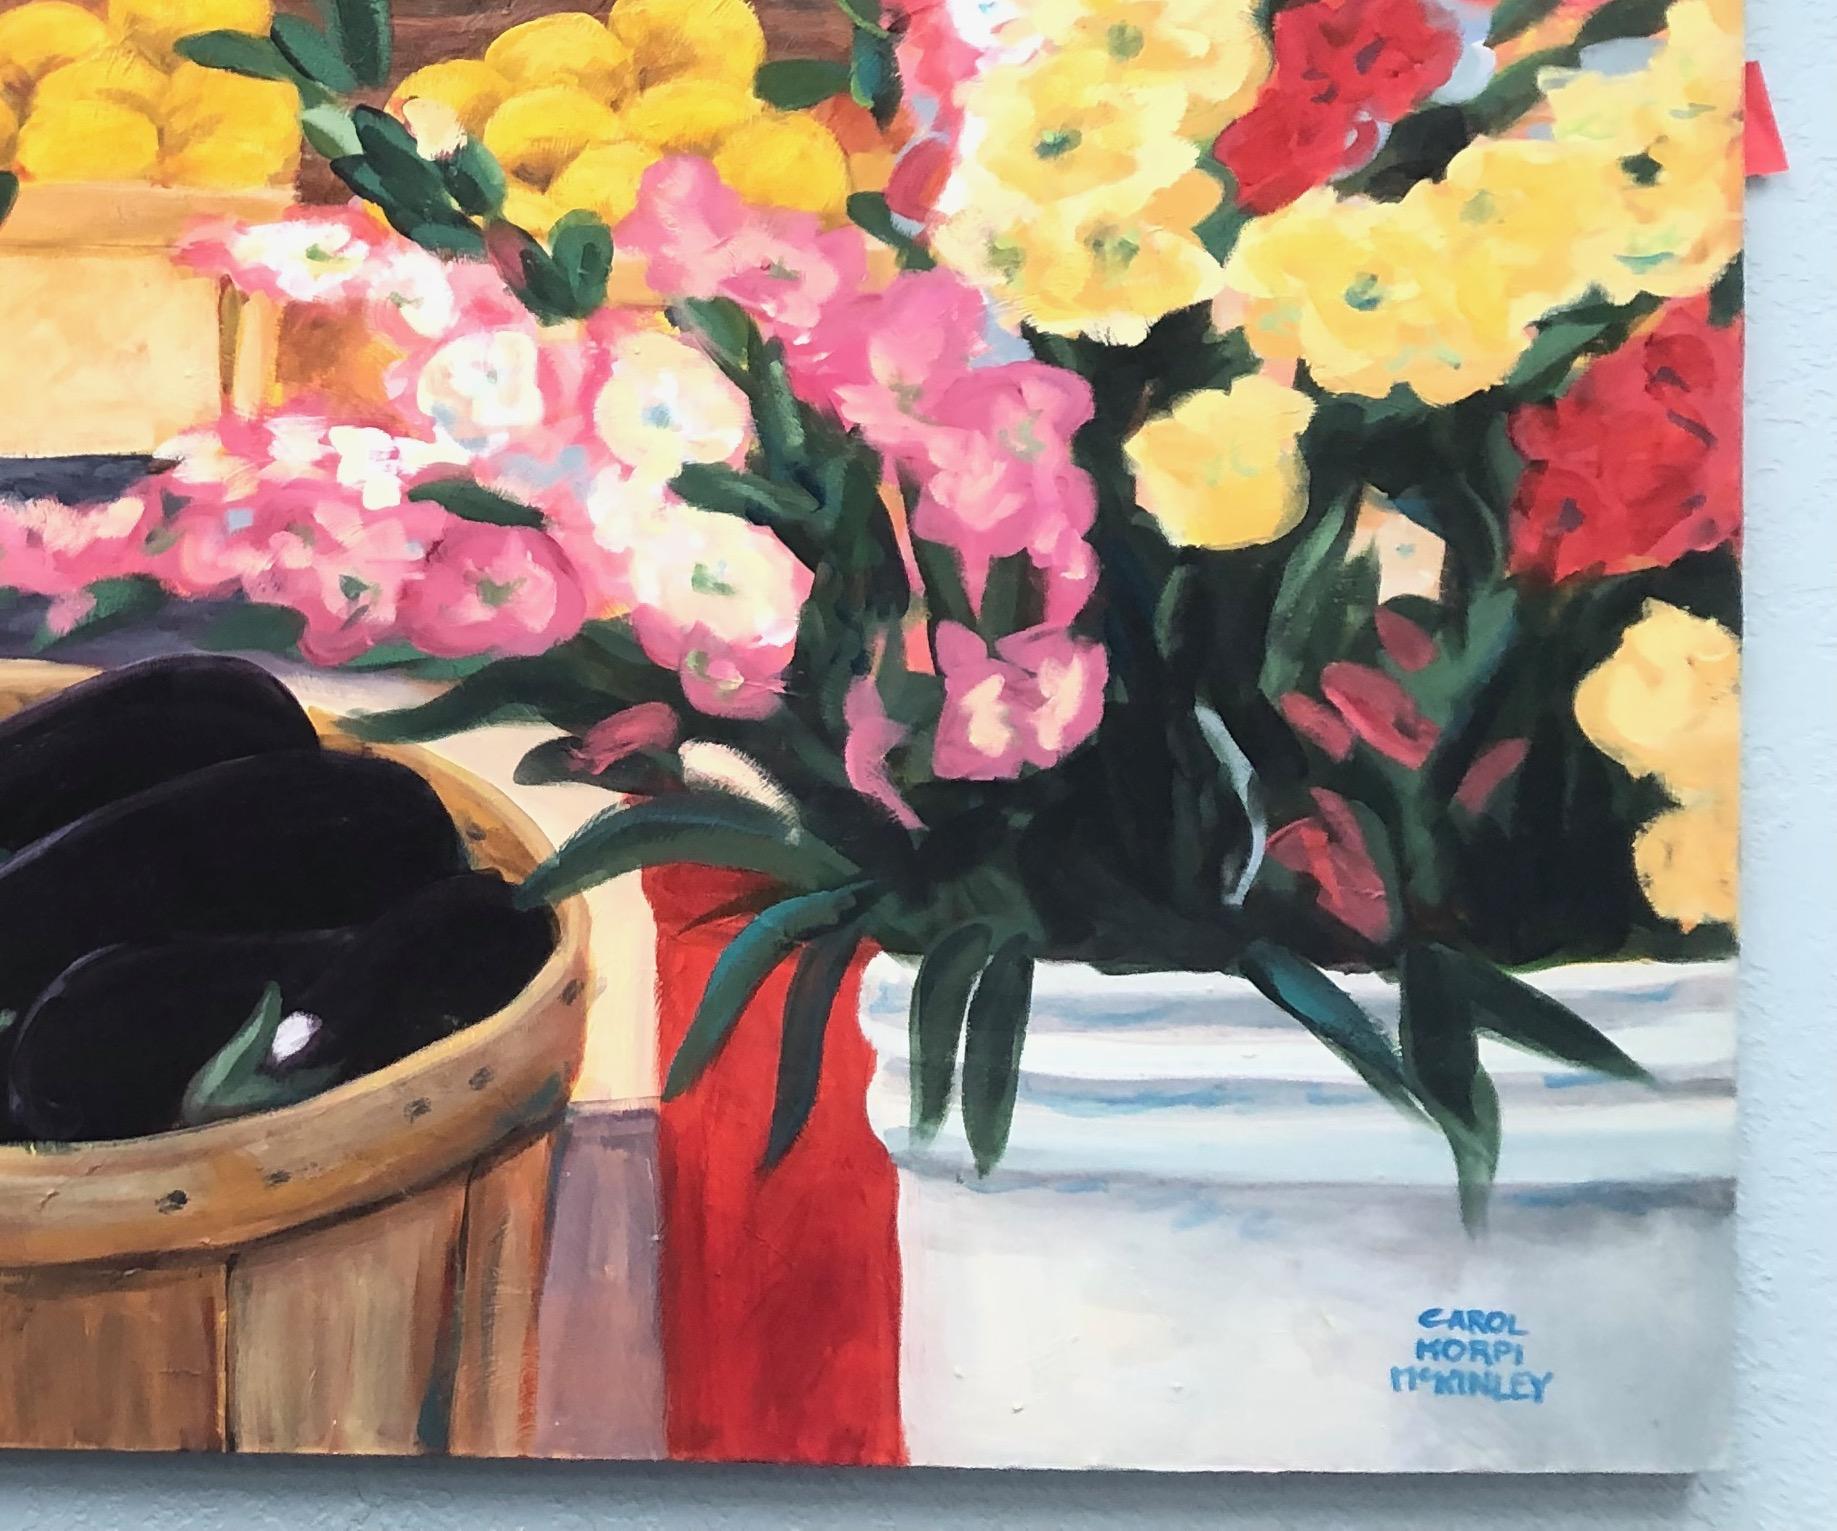 Obstmarkt Großes Stilleben Gemälde  – Painting von Carol McKinley